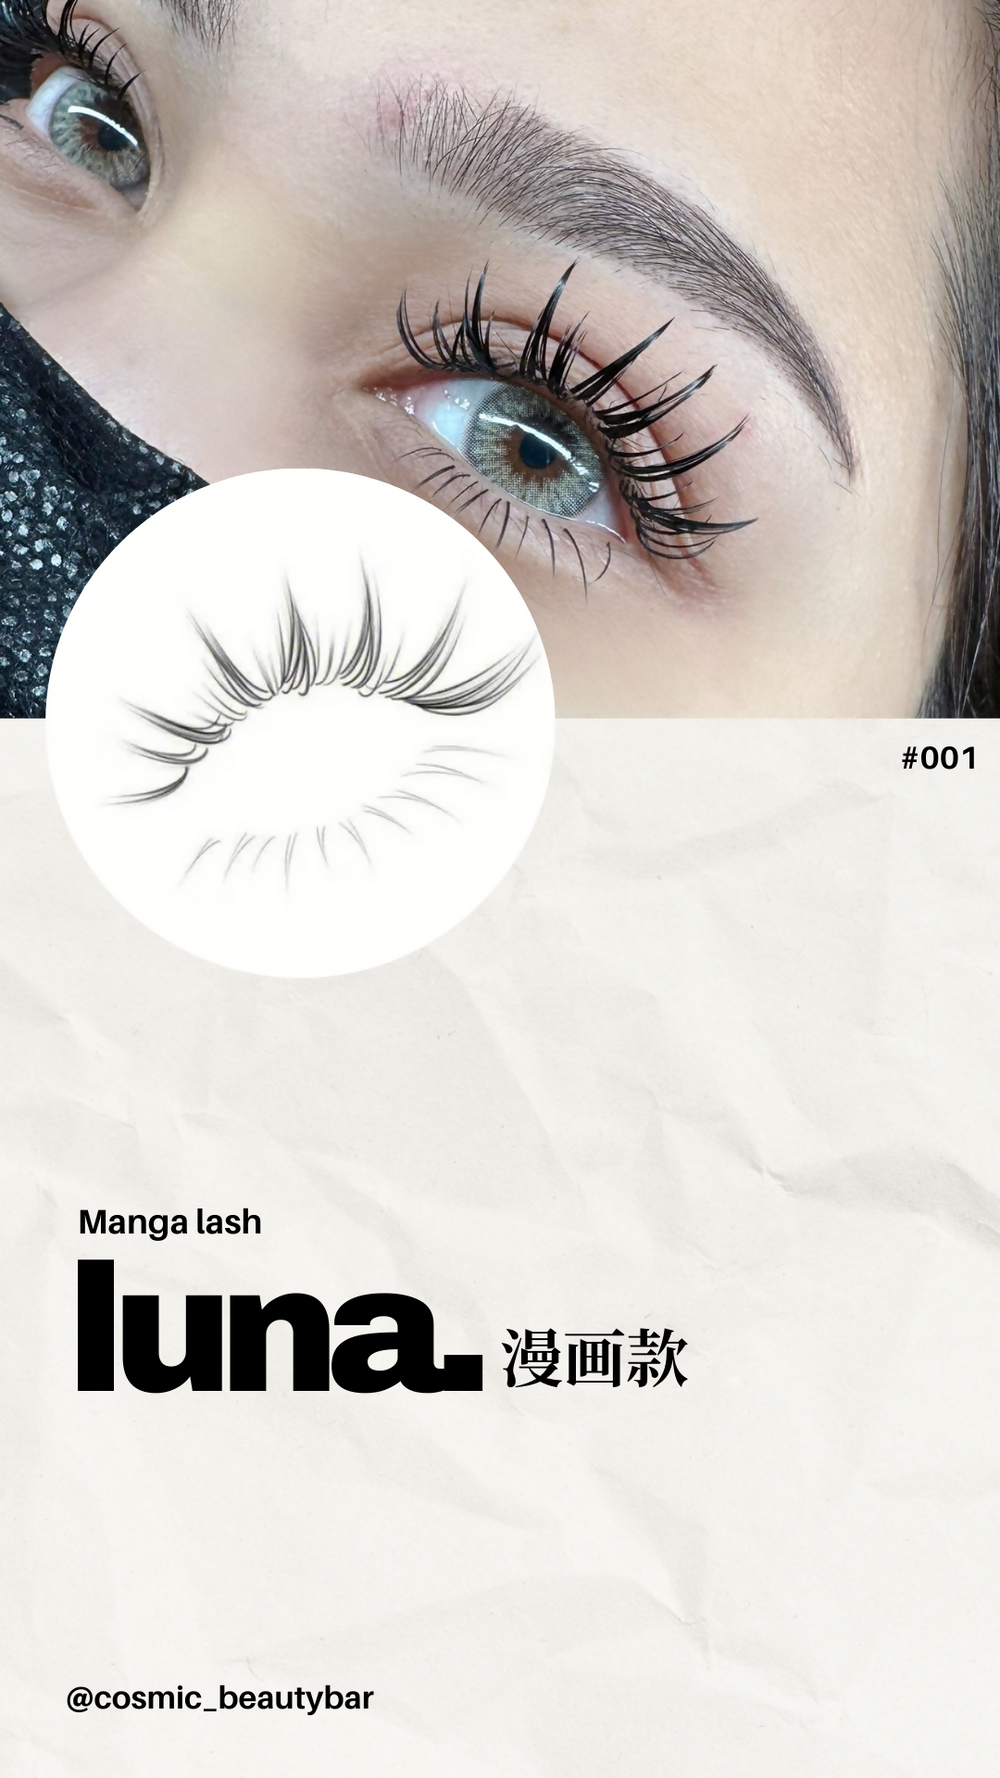 Luna (Manga/Anime Lashes)